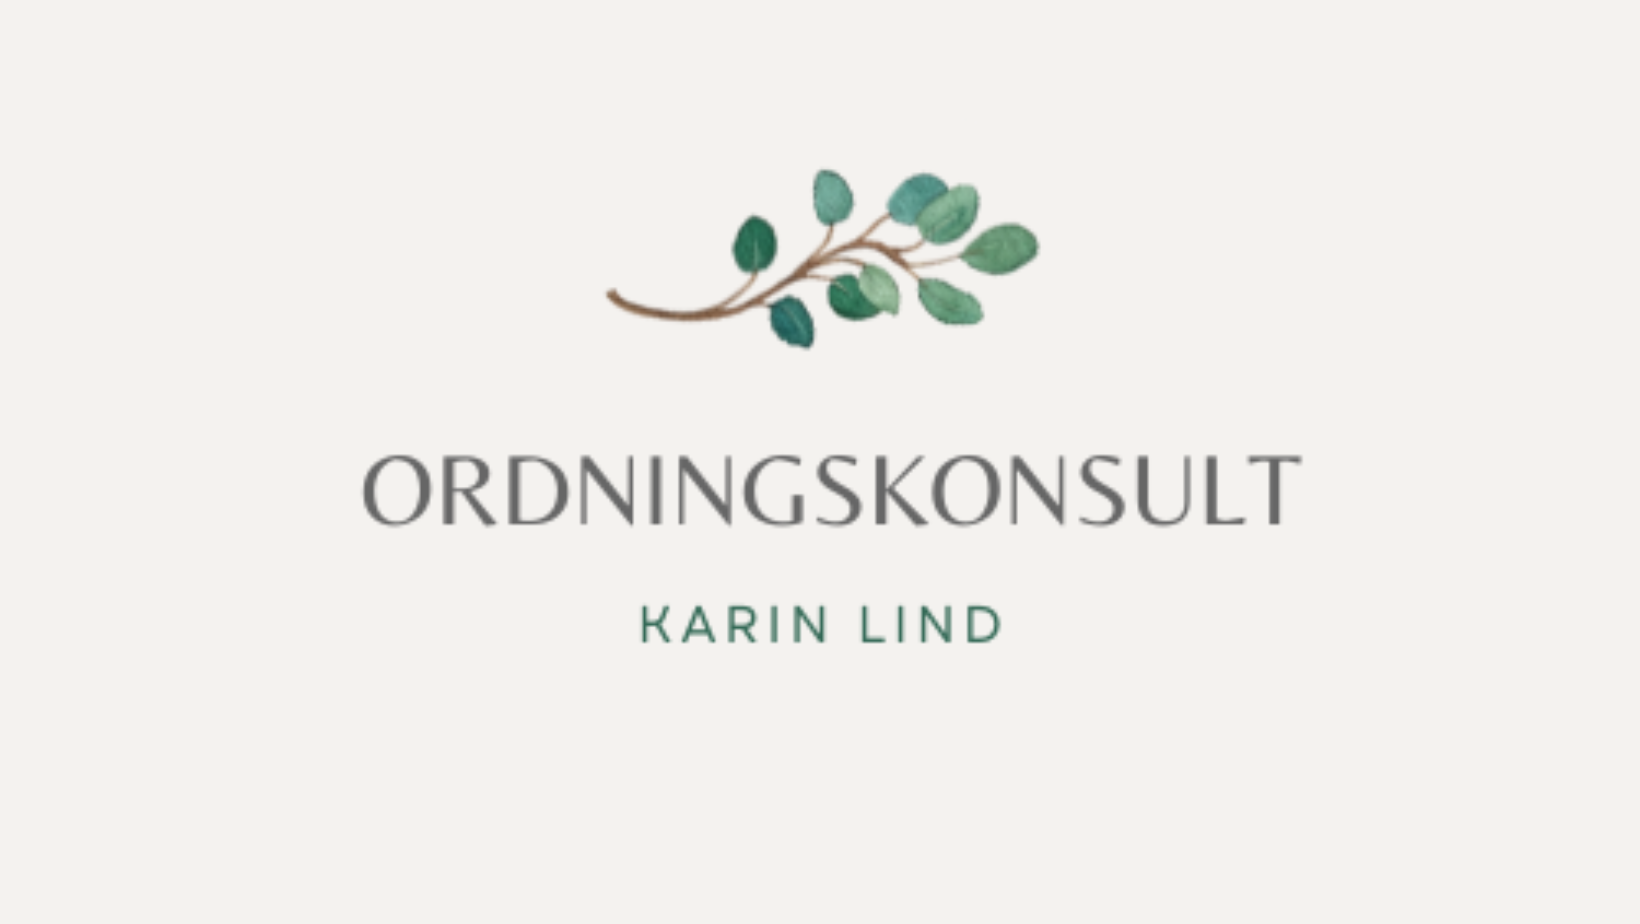 Ordningskonsult Karin Lind